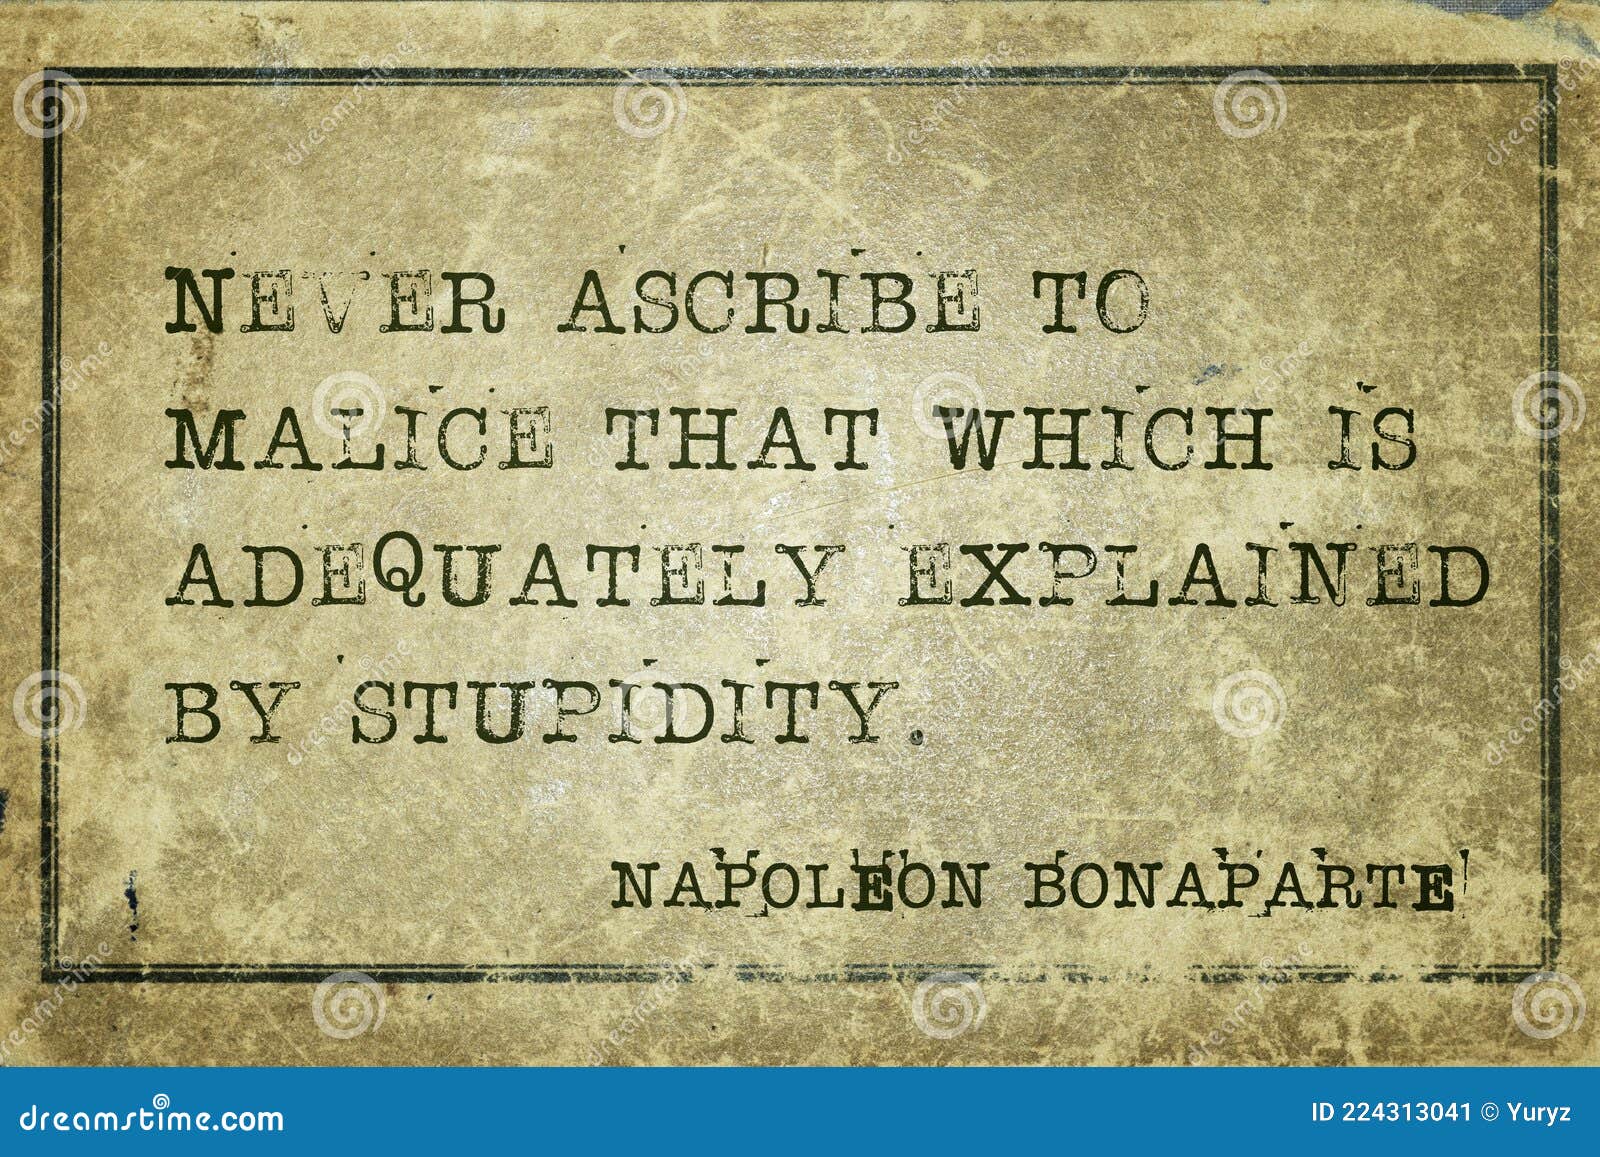 by stupidity napoleon